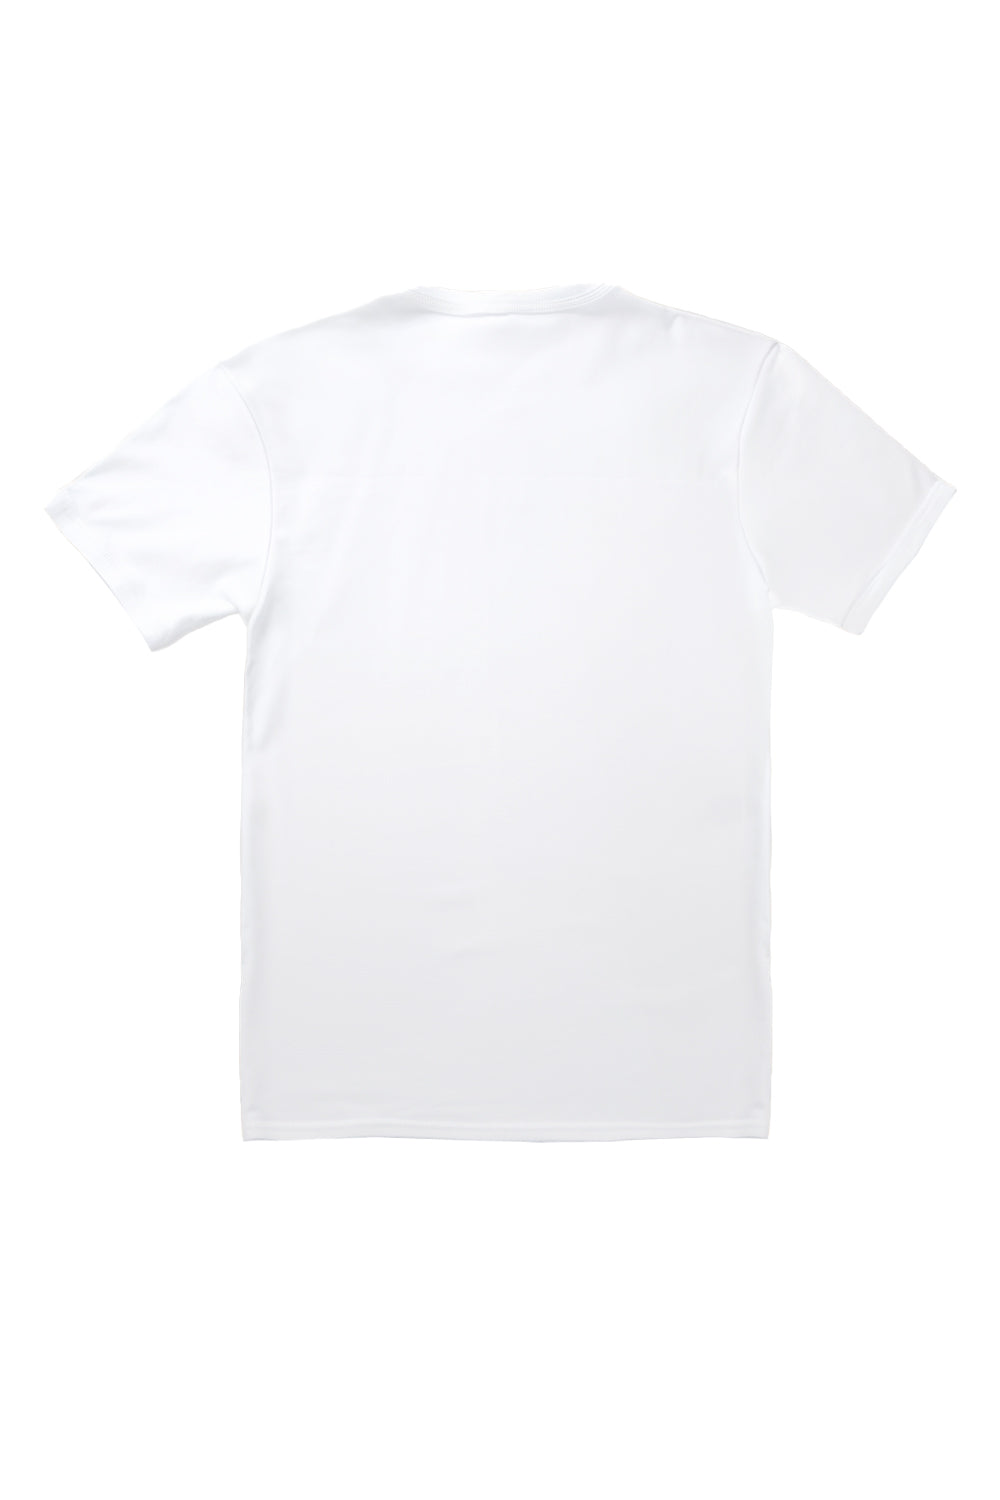 Los Angeles T-Shirt in White(Custom Packs)